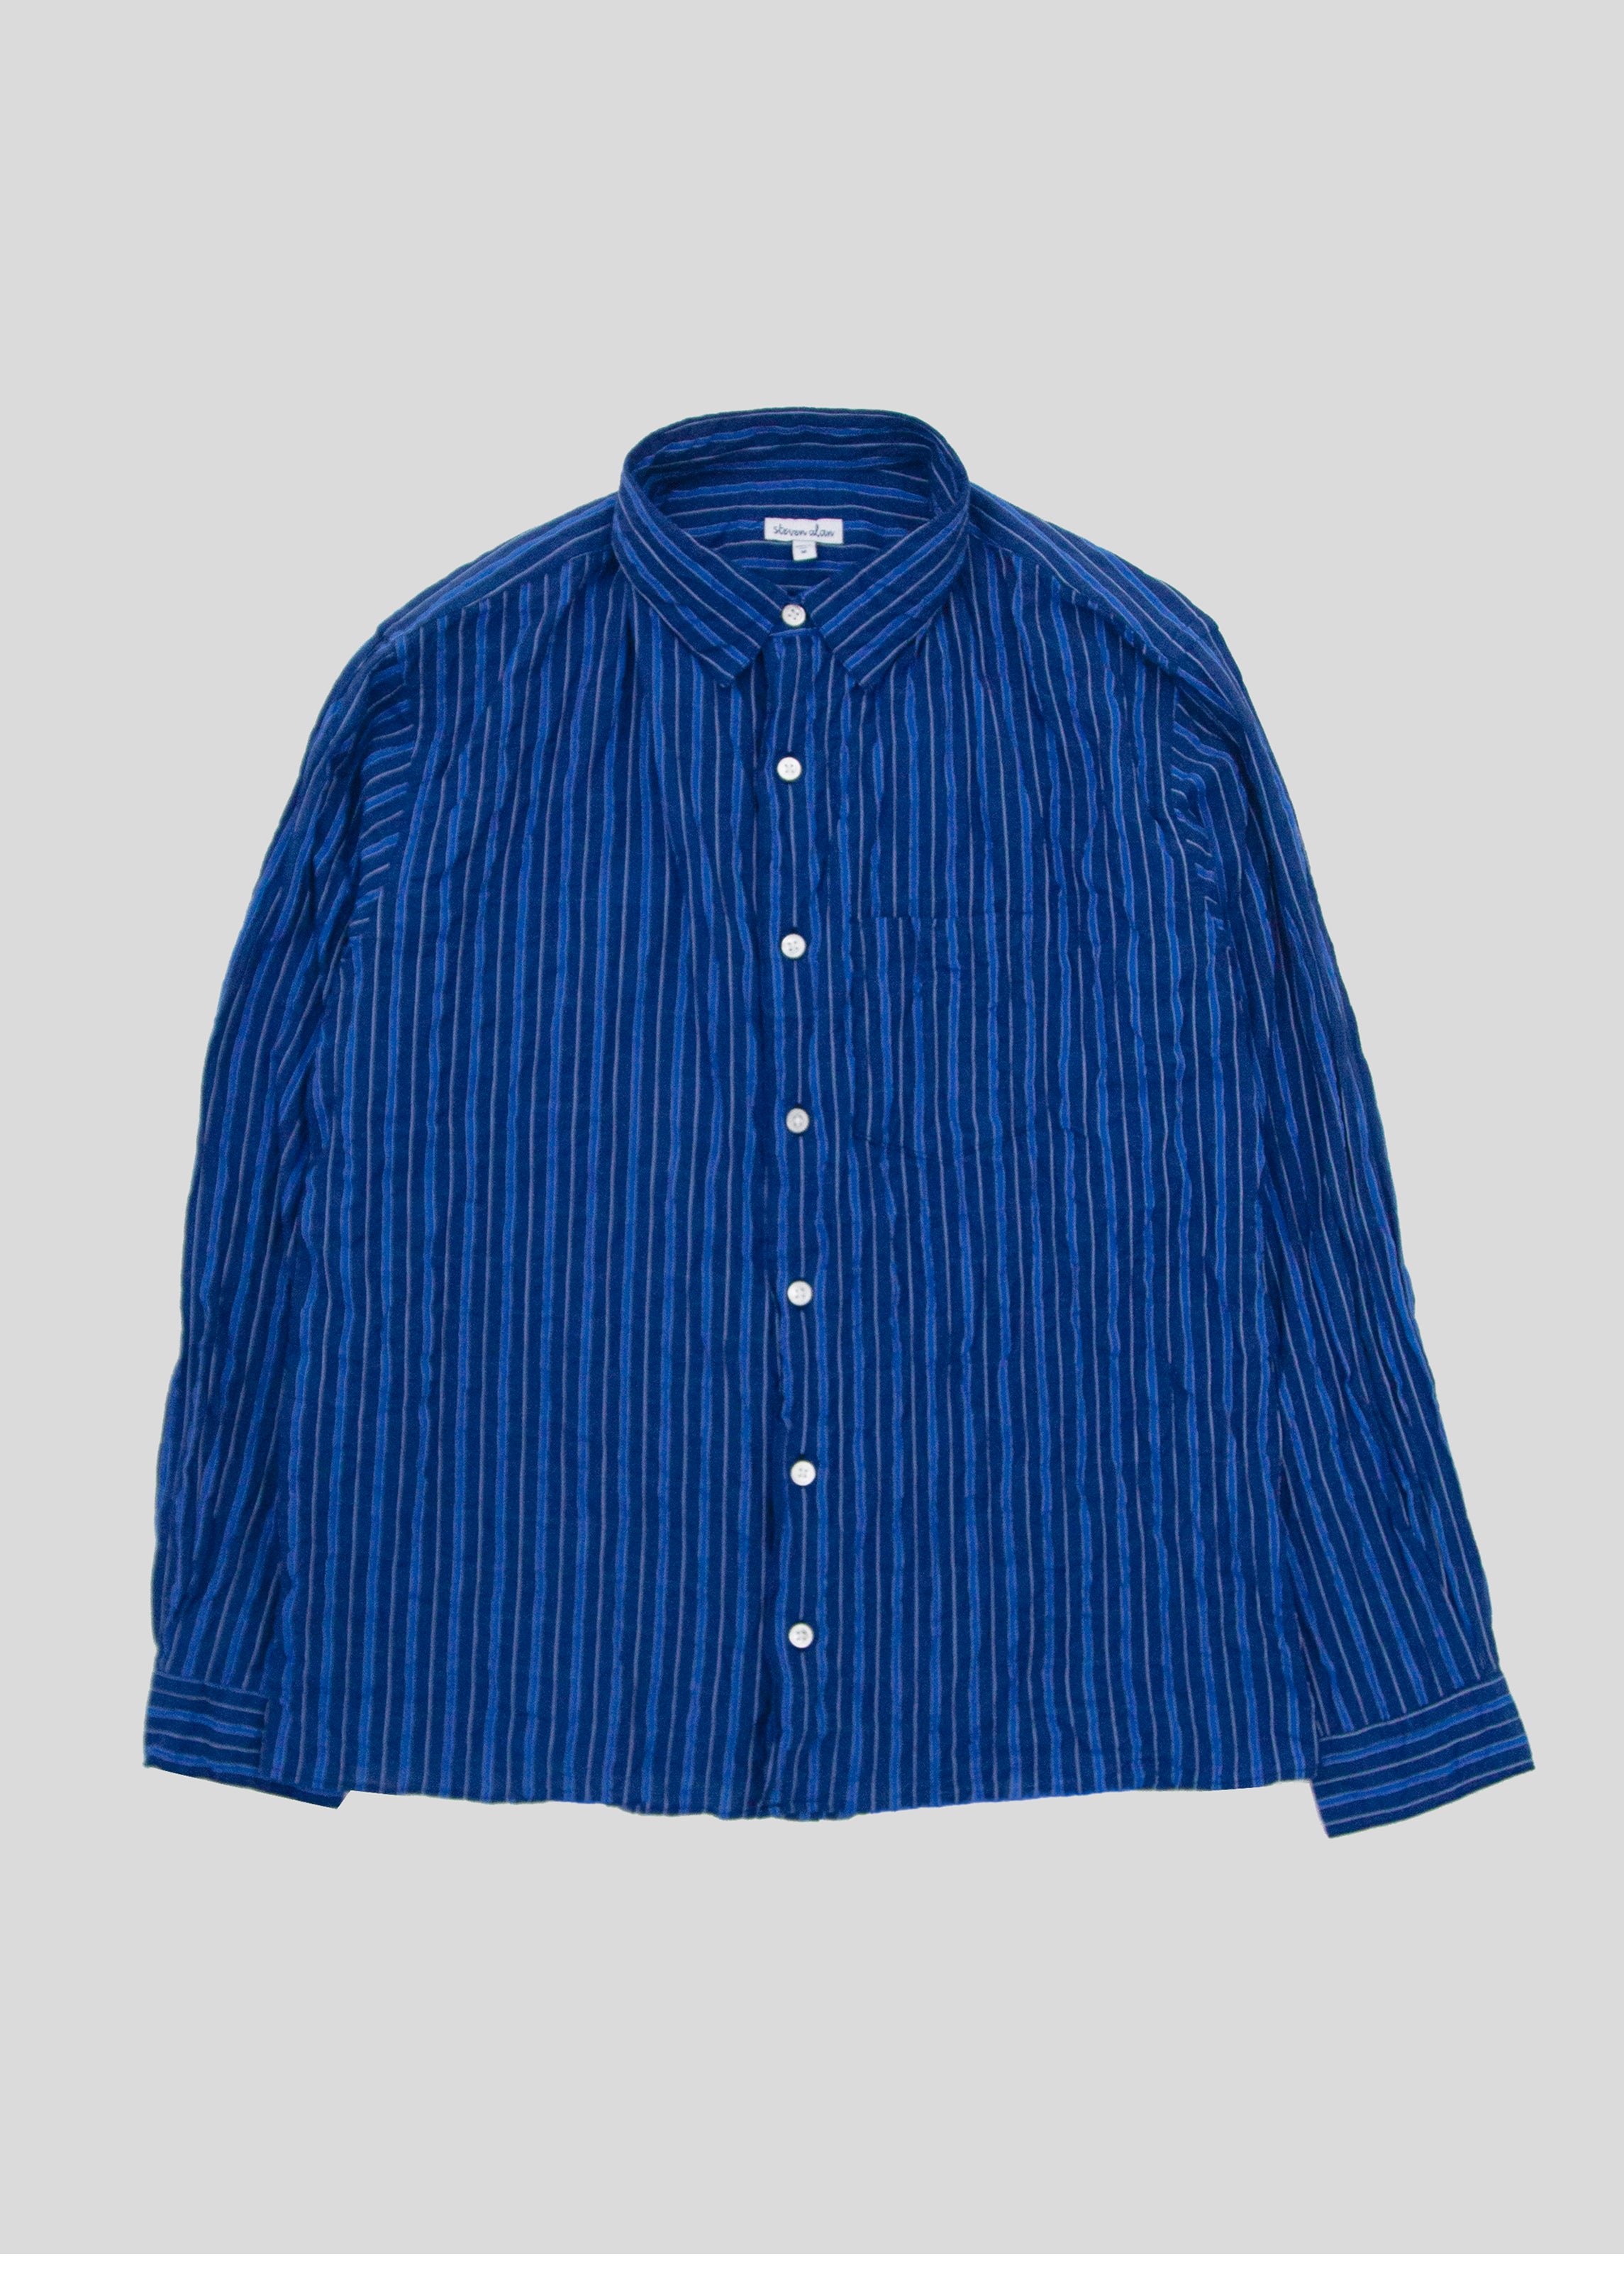 The Notch Shirt, Dark Blue Stripe – Steven Alan